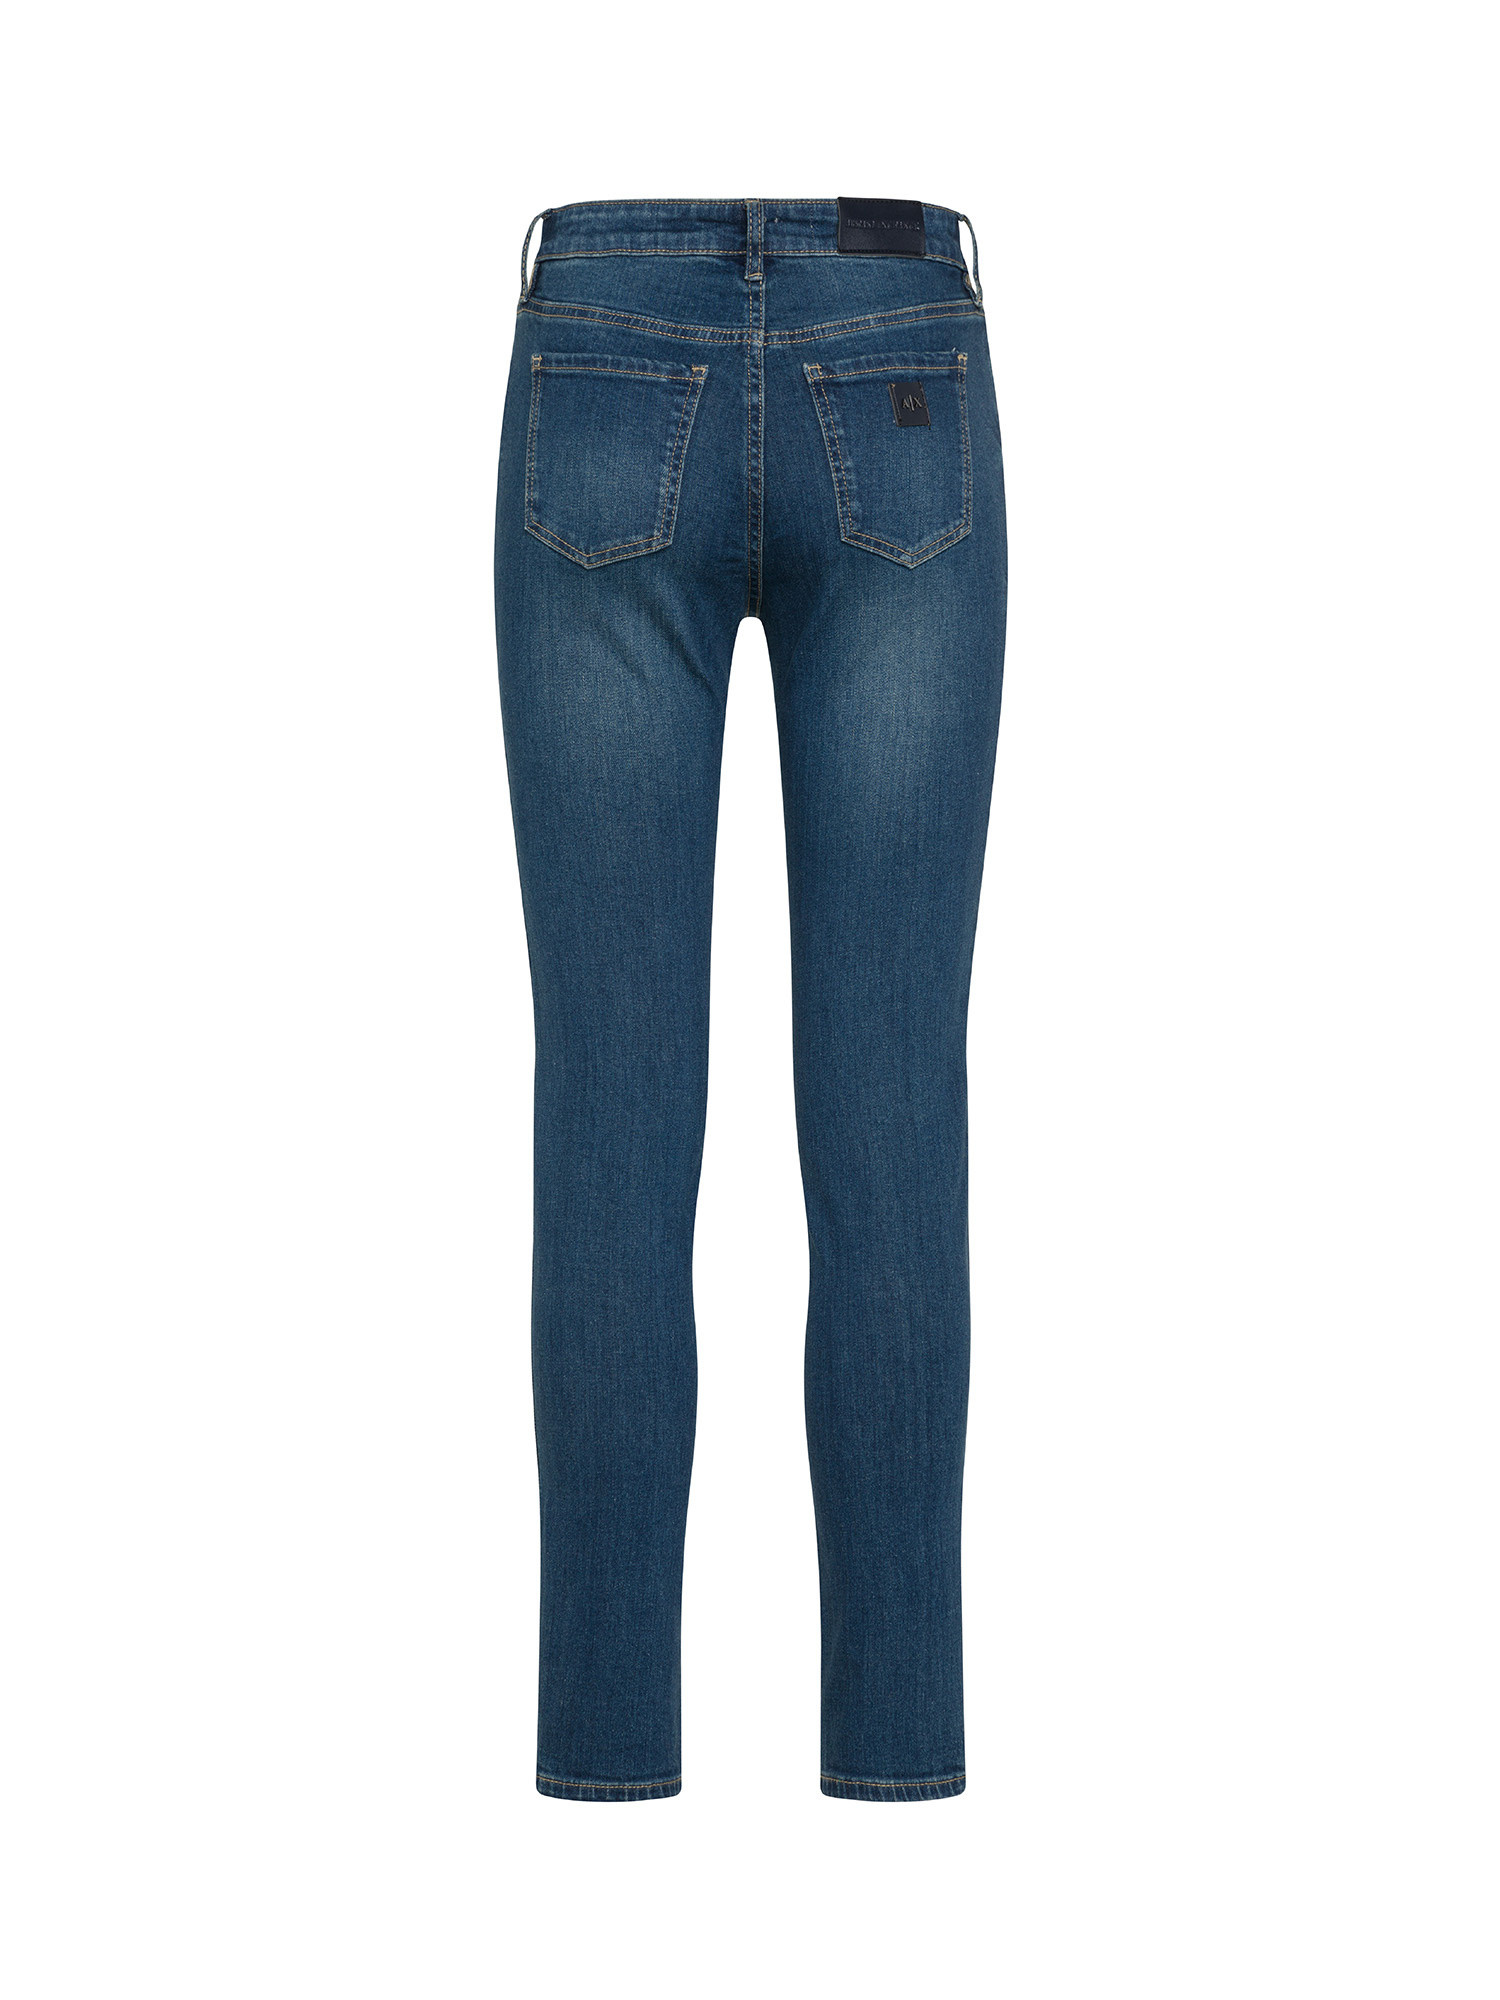 Armani Exchange - Super skinny jeans, Denim, large image number 1